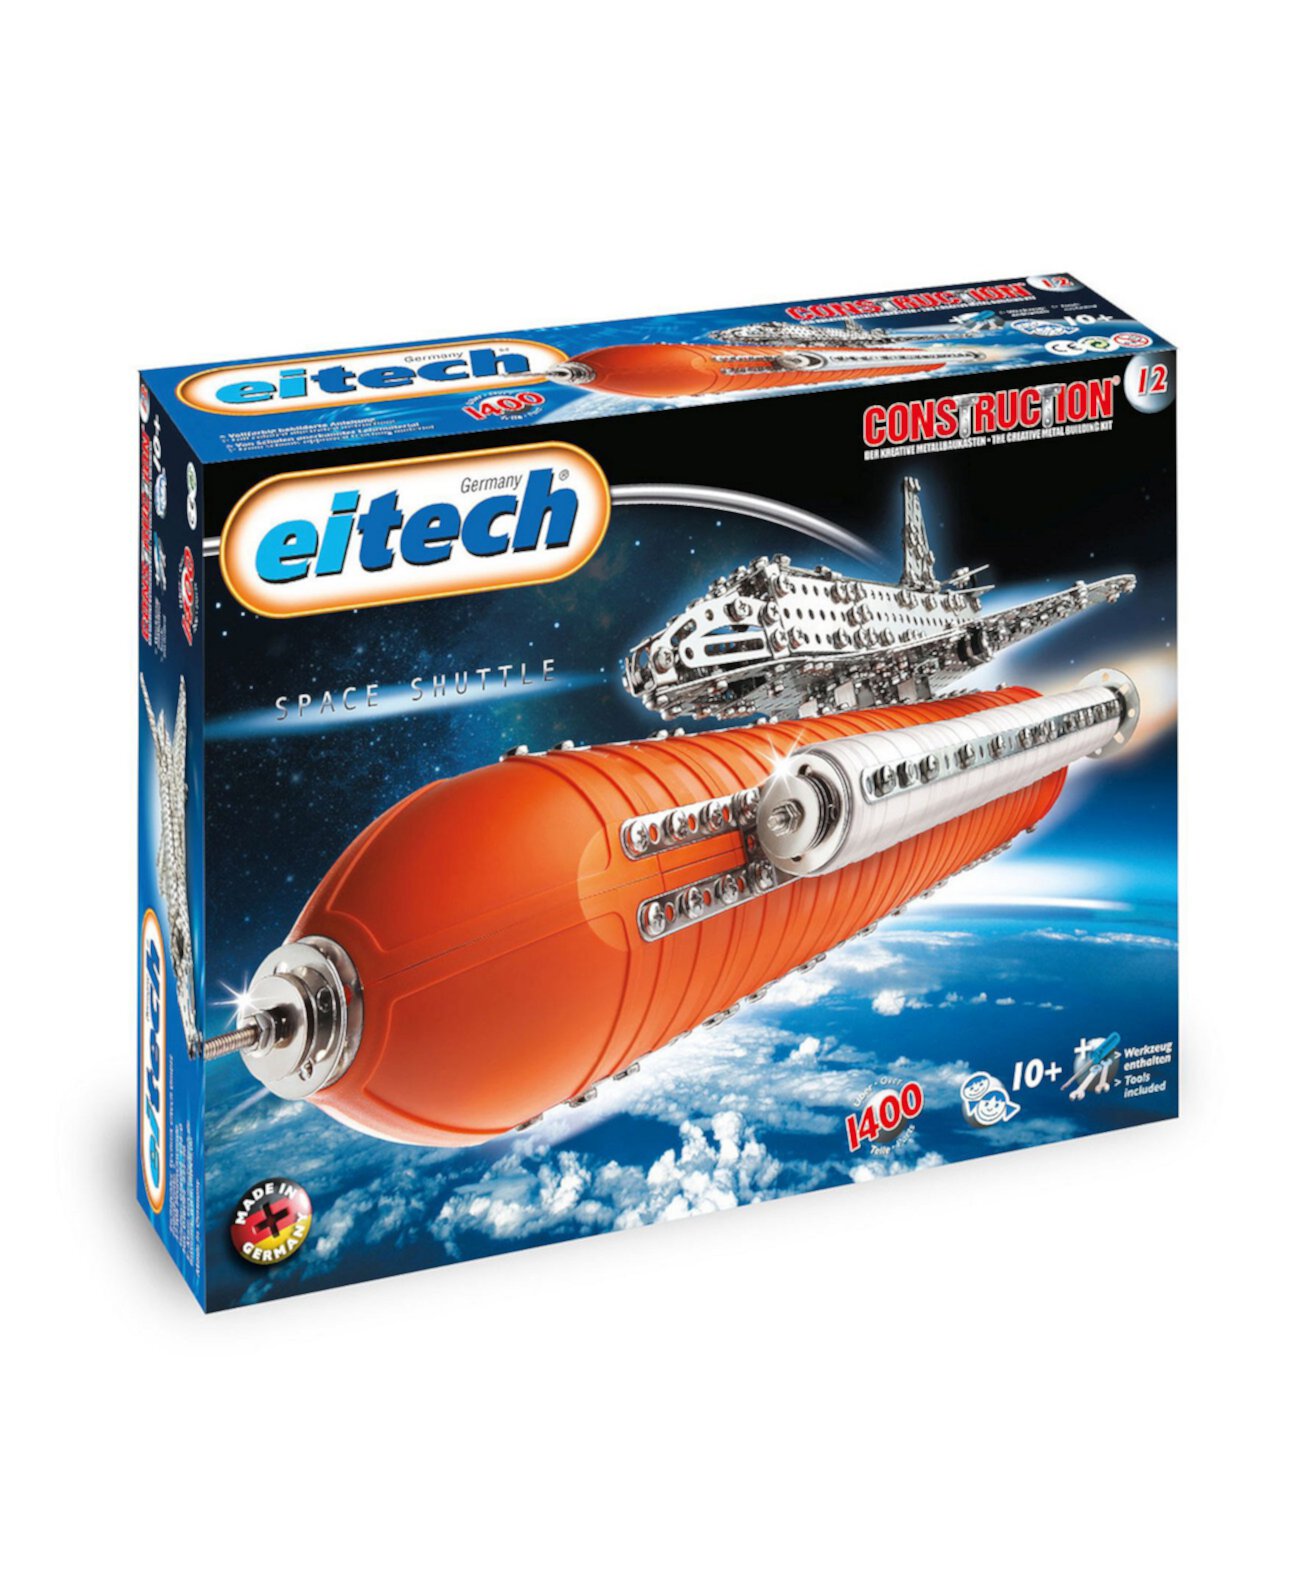 Эксклюзивная серия Deluxe Space Space Shuttle Eitech